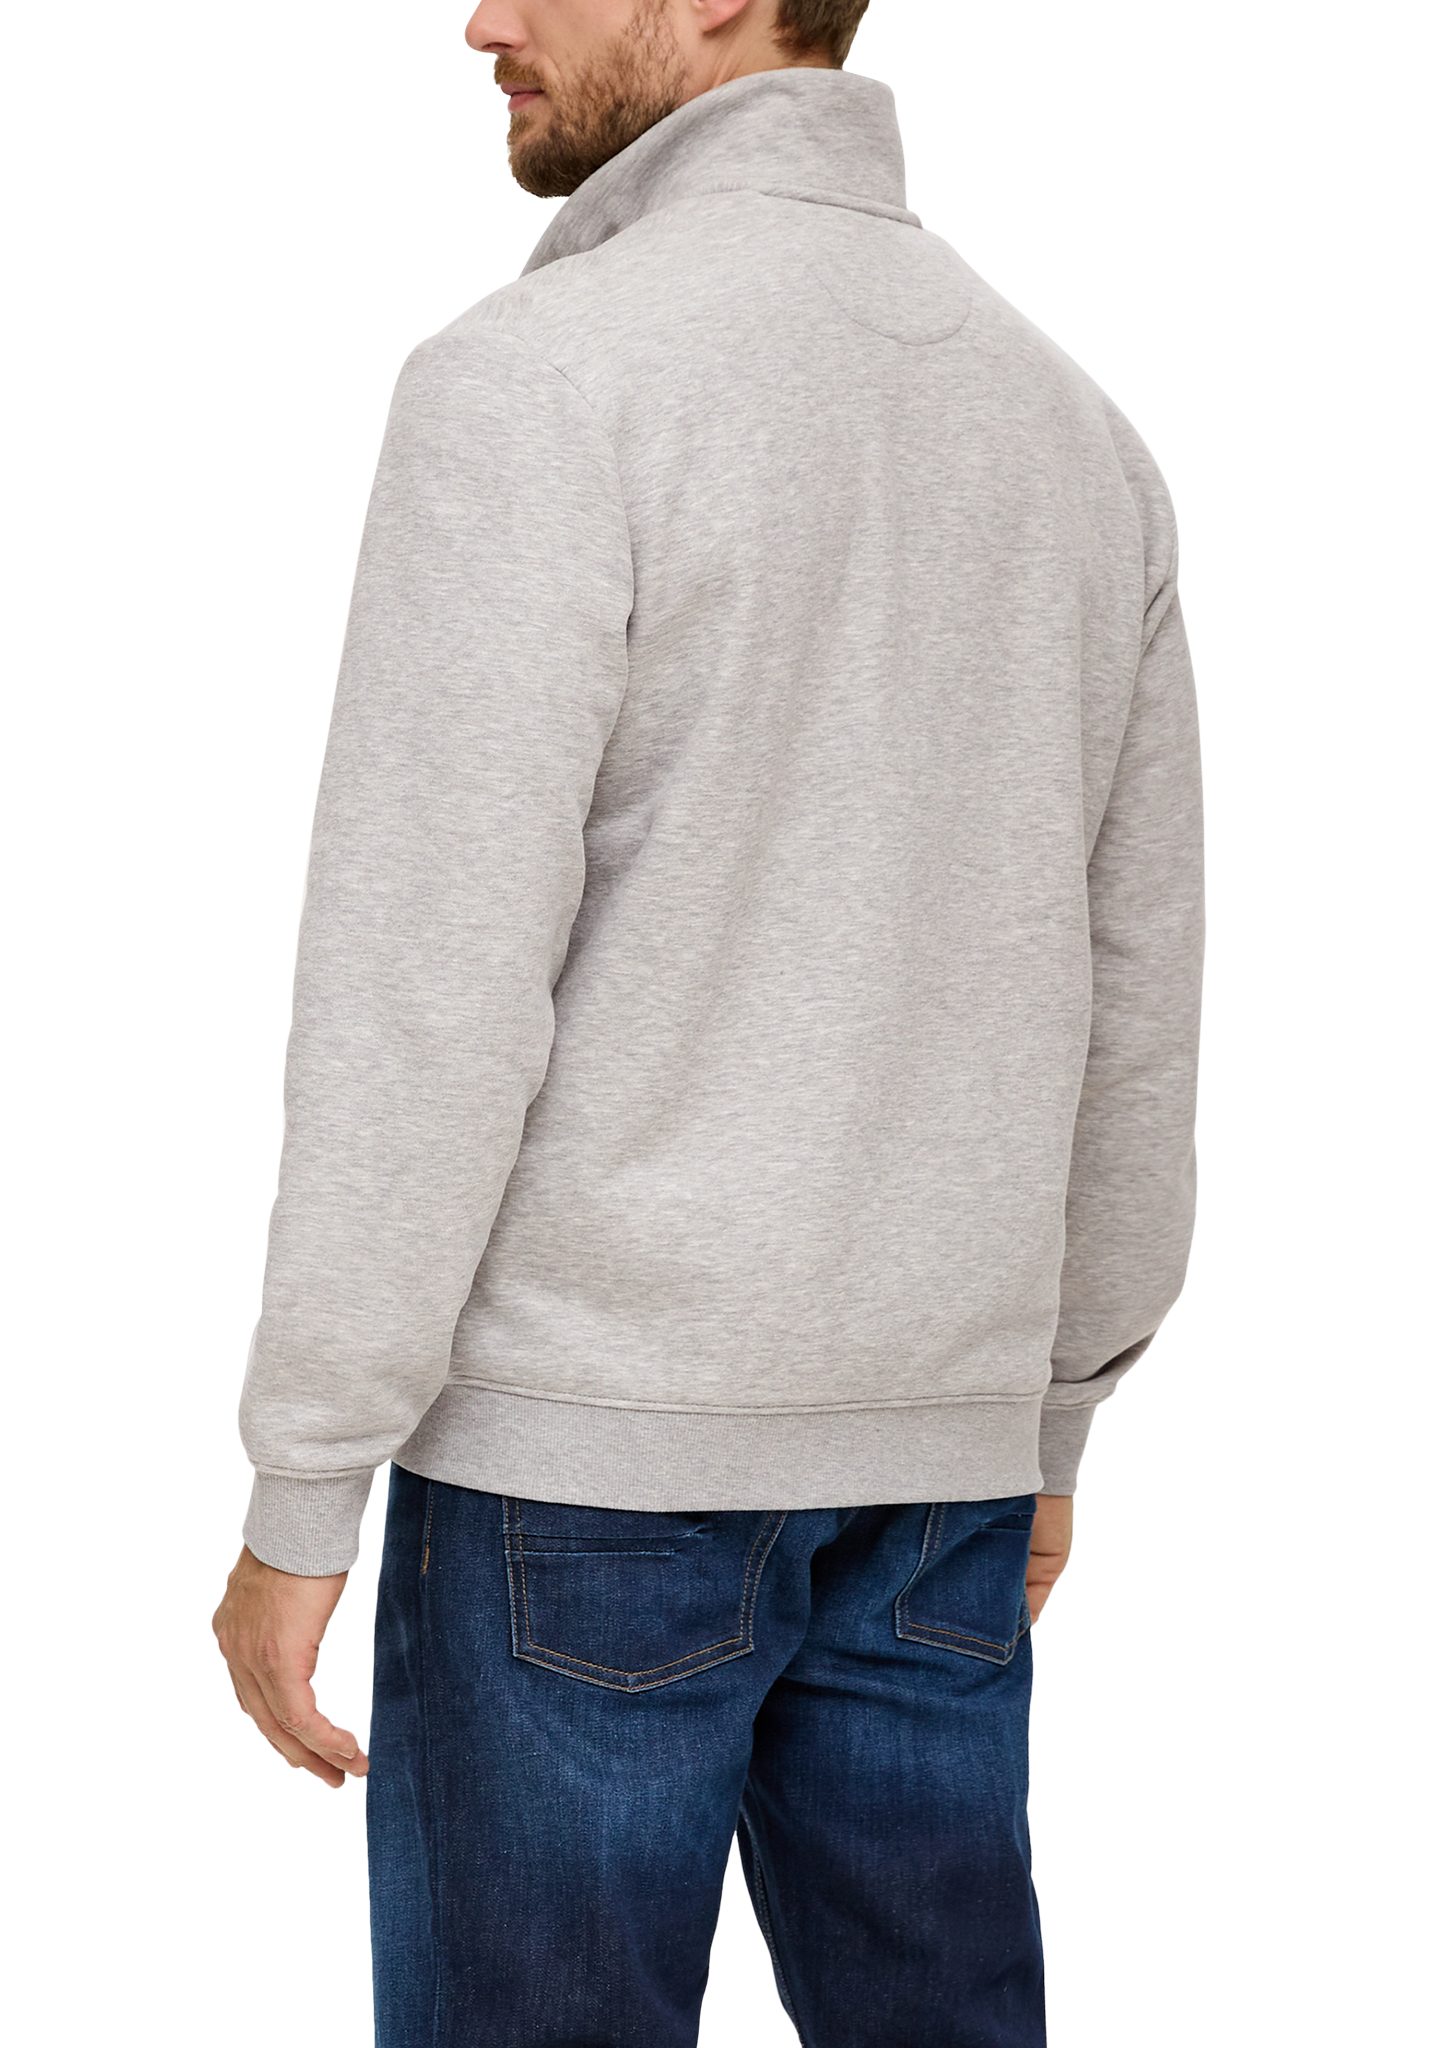 Streifen-Detail meliert Logo, Stehkragen Allwetterjacke grau s.Oliver mit Sweatshirt-Jacke